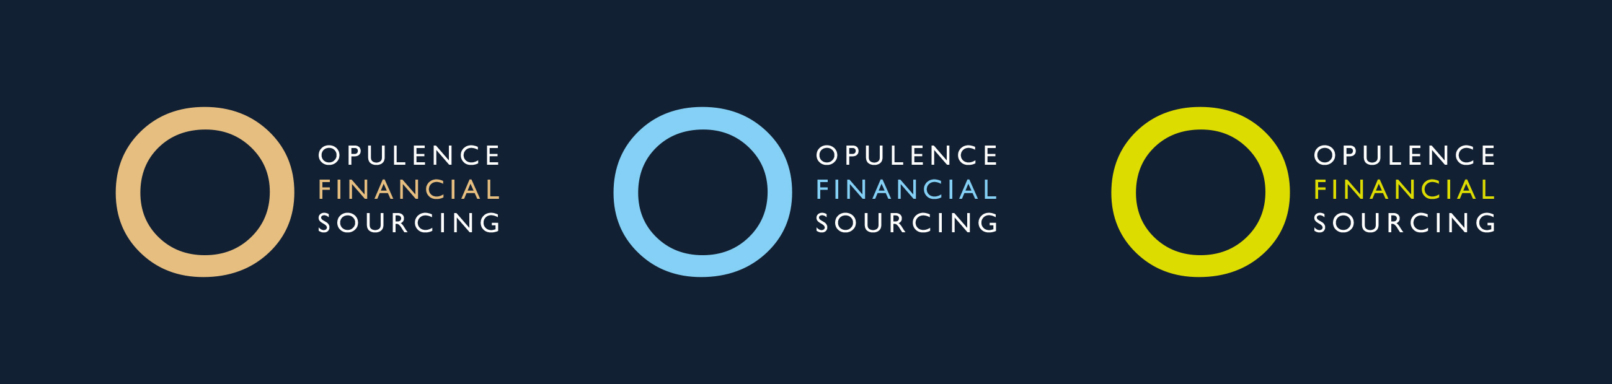 Opulence FS Logo Variations